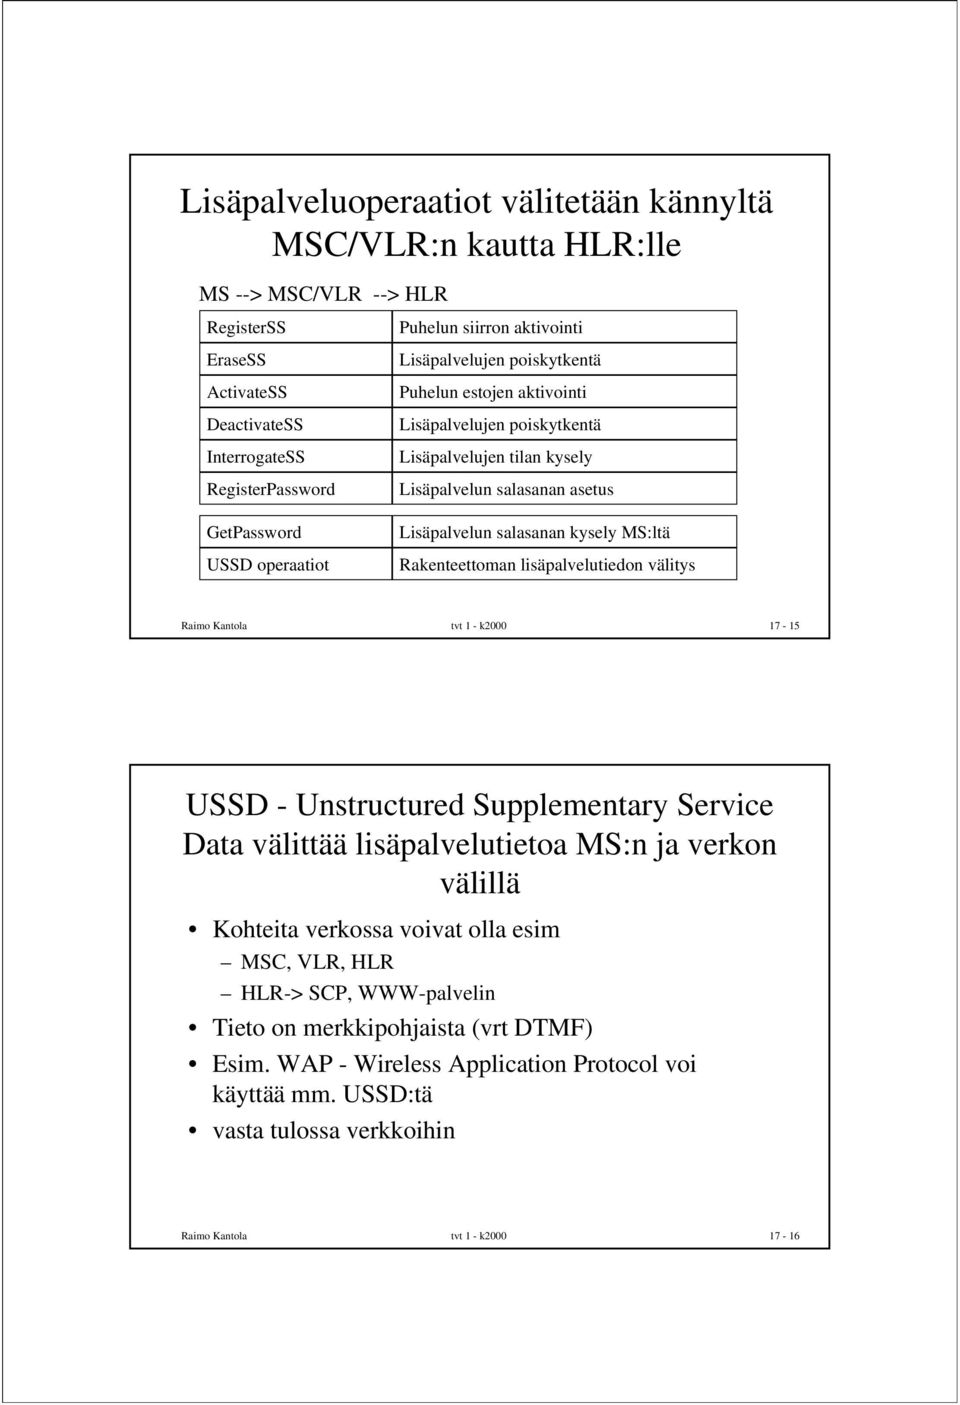 Rakenteettoman lisäpalvelutiedon välitys Raimo Kantola tvt 1 - k2000 17-15 USSD - Unstructured Supplementary Service Data välittää lisäpalvelutietoa MS:n ja verkon välillä Kohteita verkossa